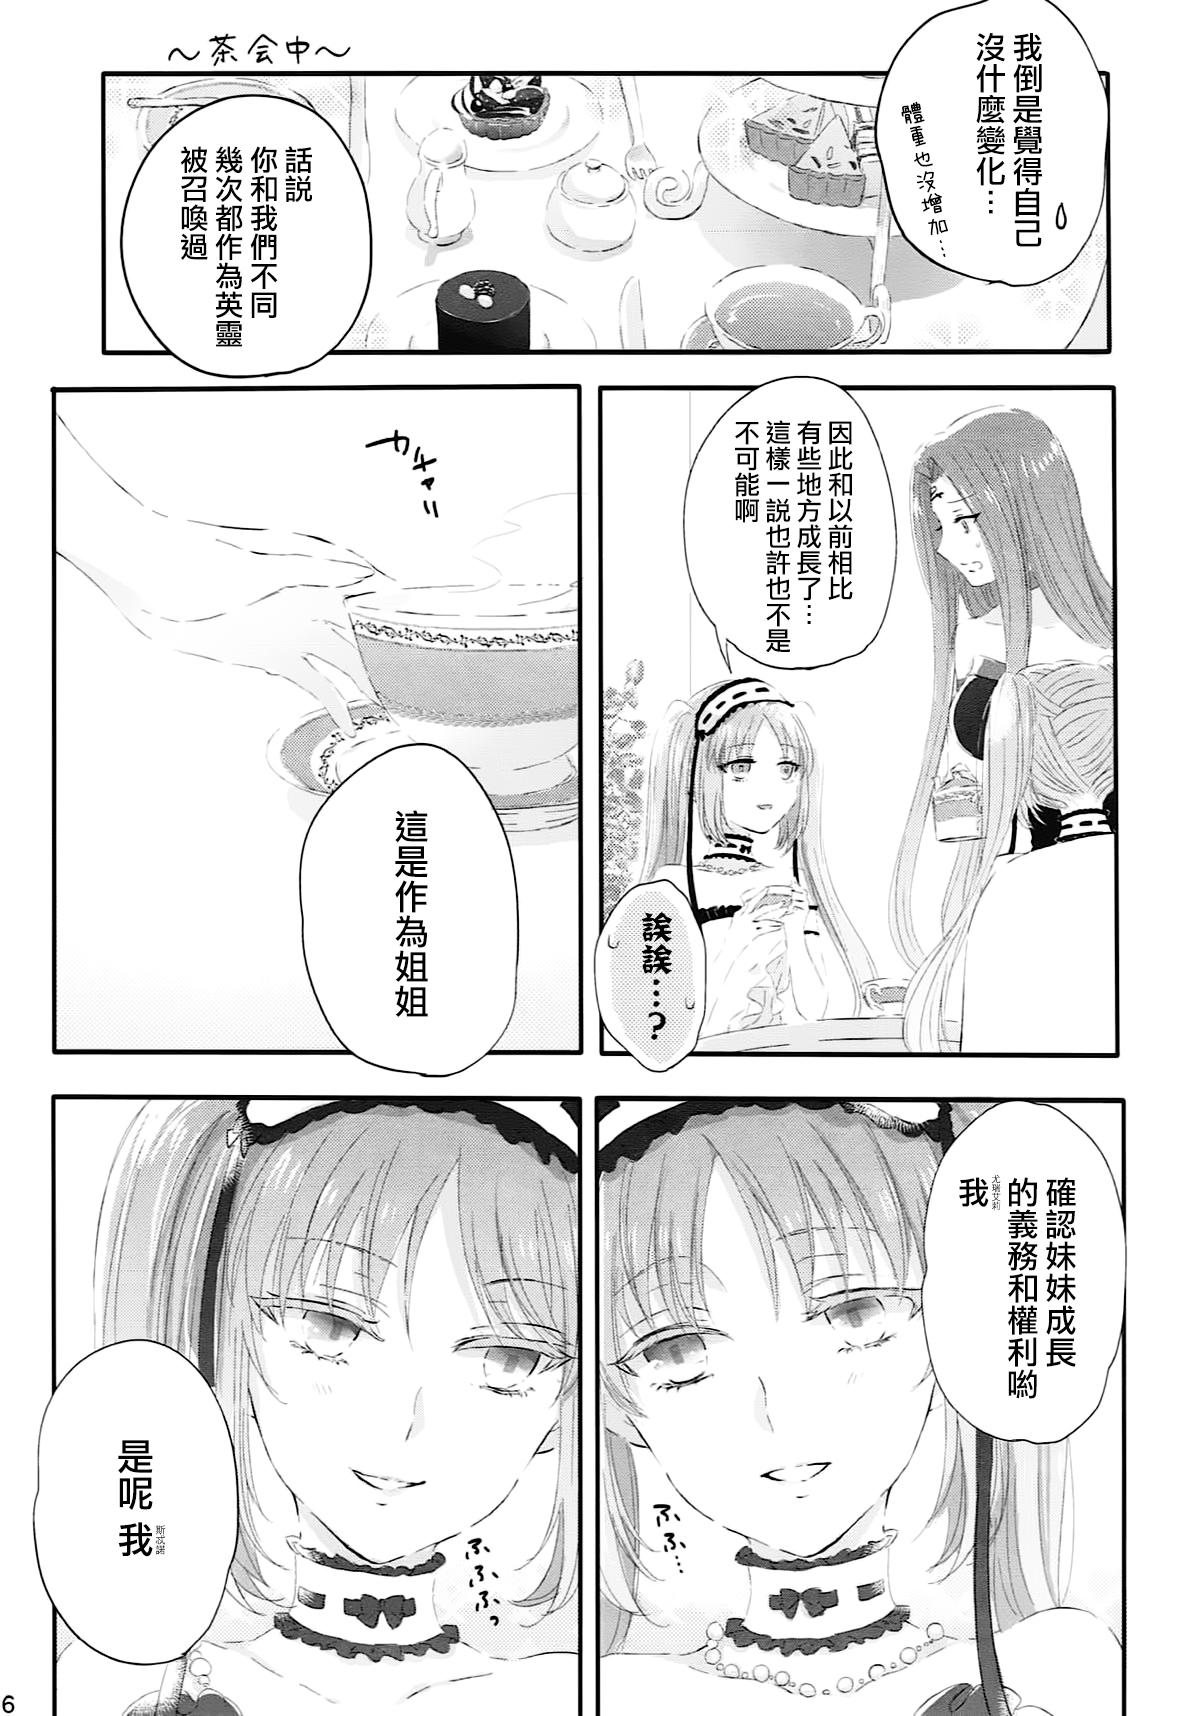 Periscope Imouto wa Ane no Mono - Fate grand order Titten - Page 6